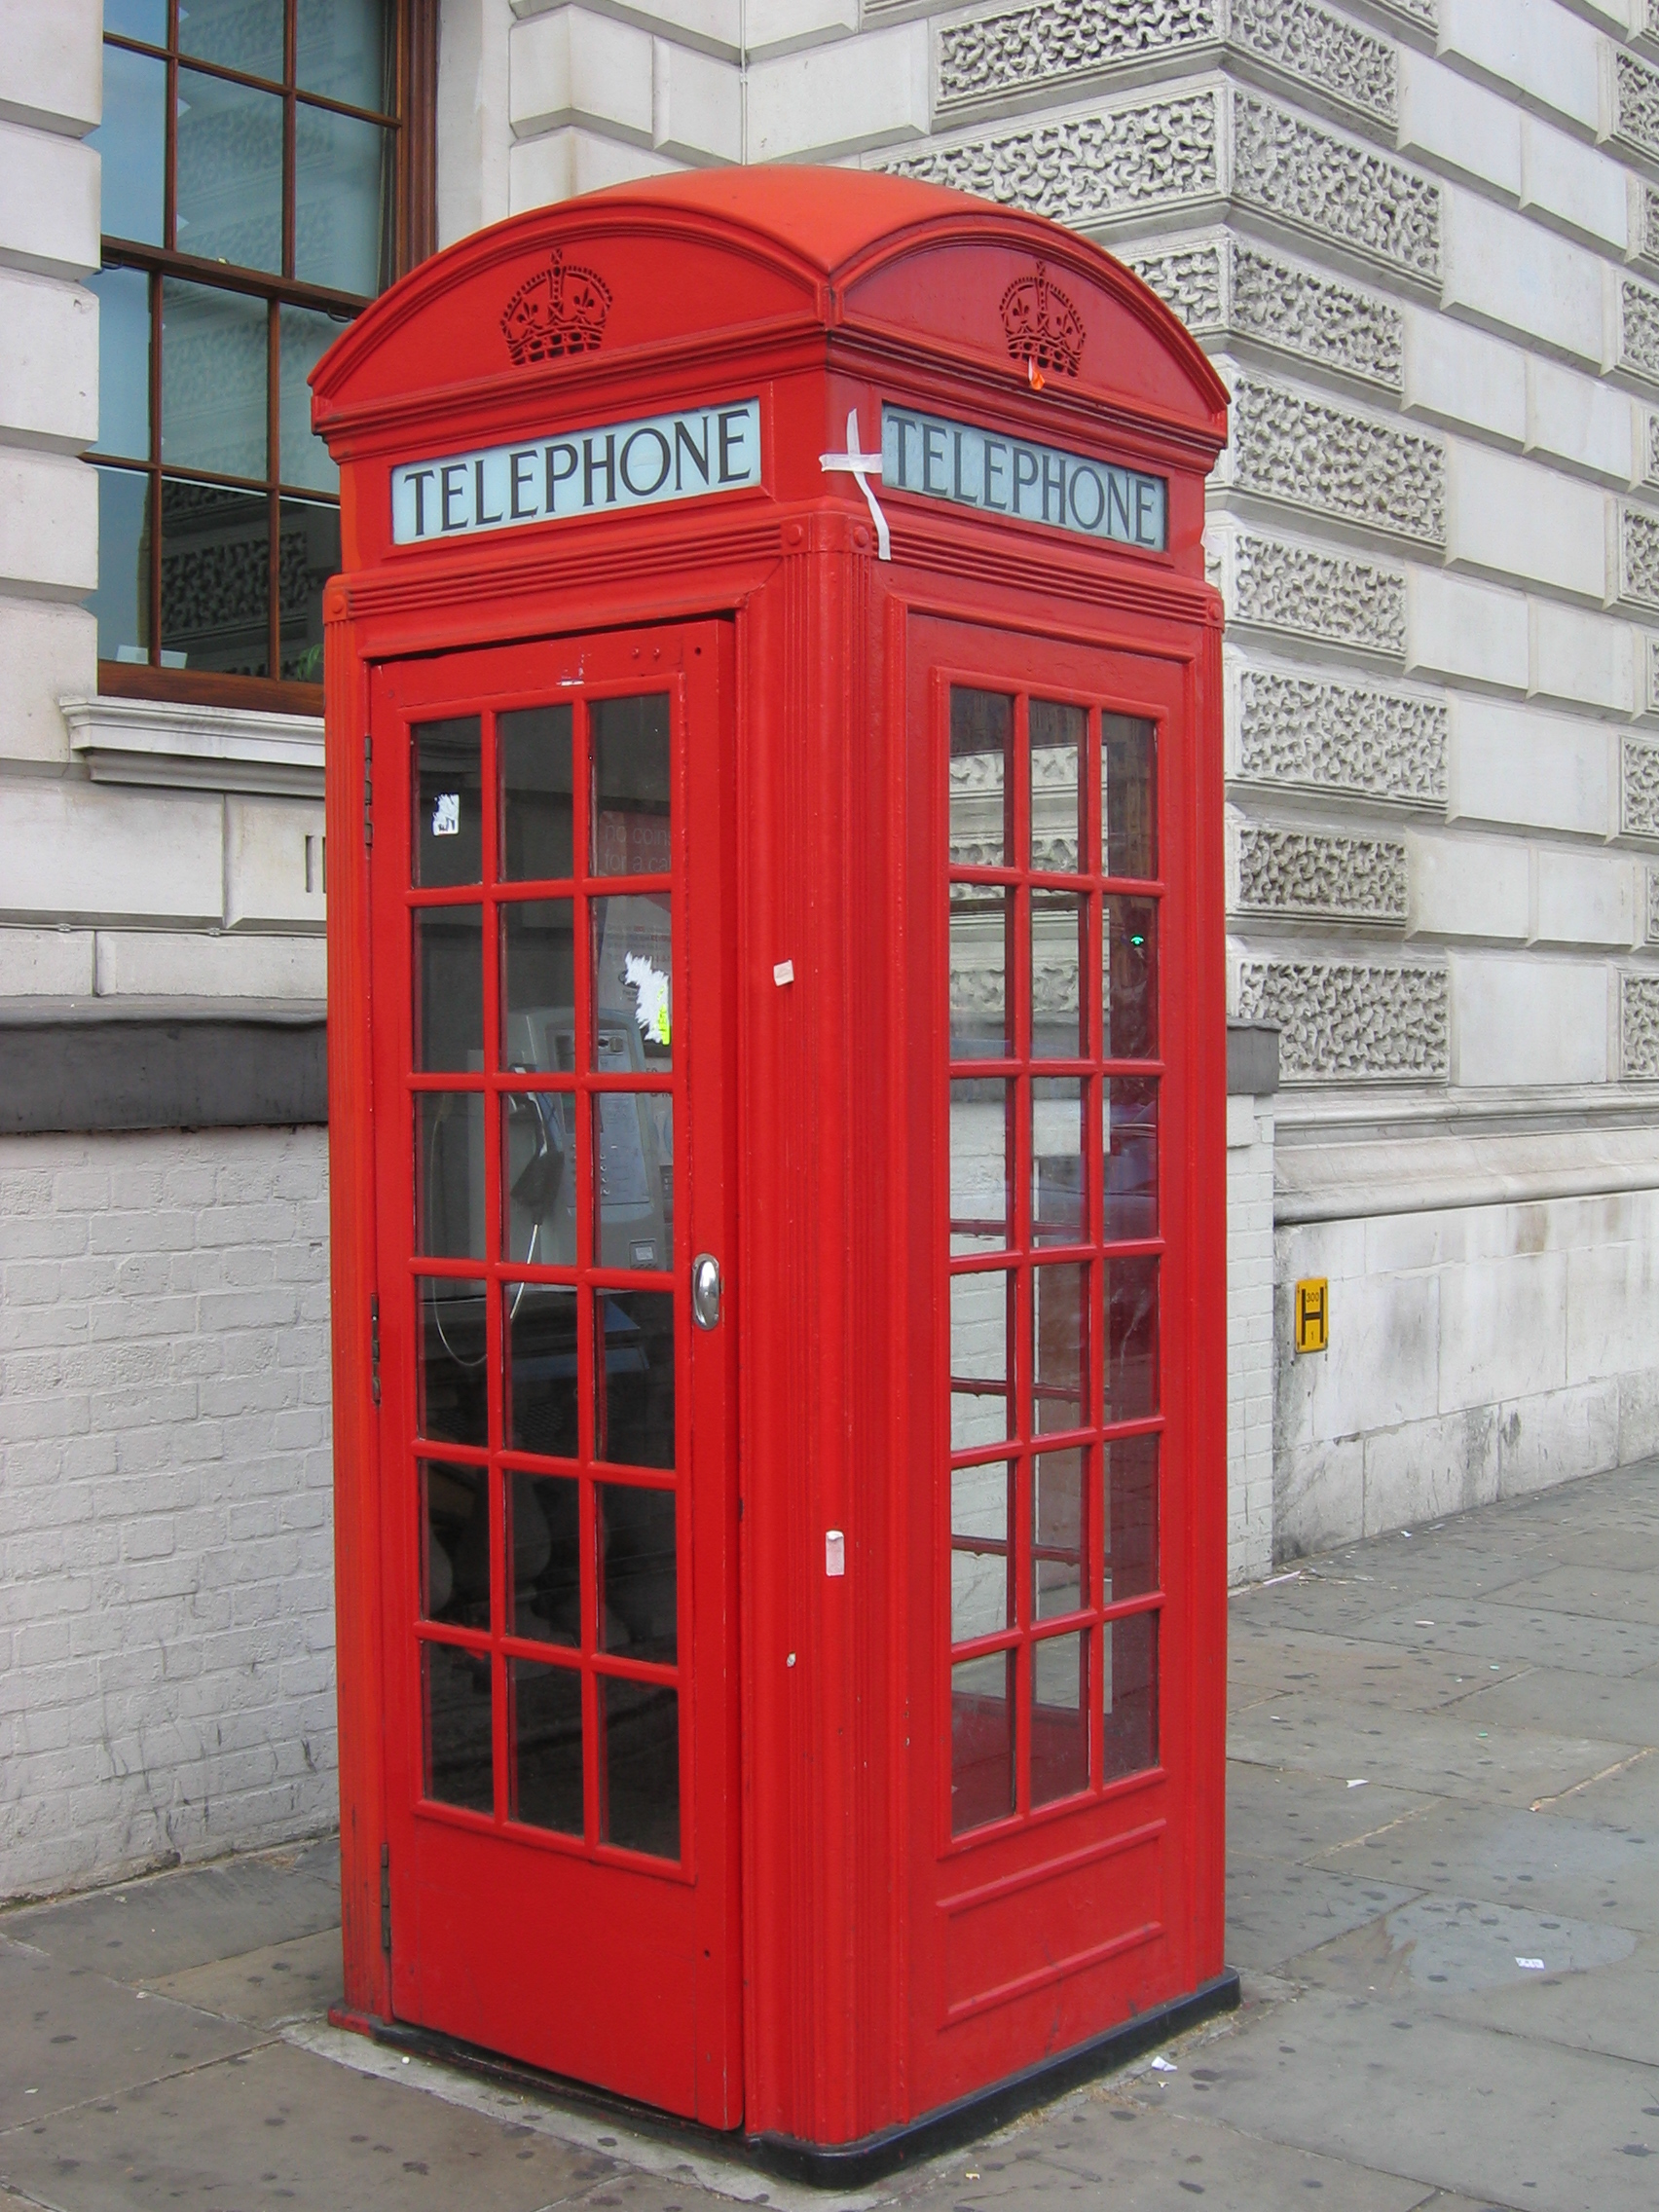 телефонная будка в великобритании